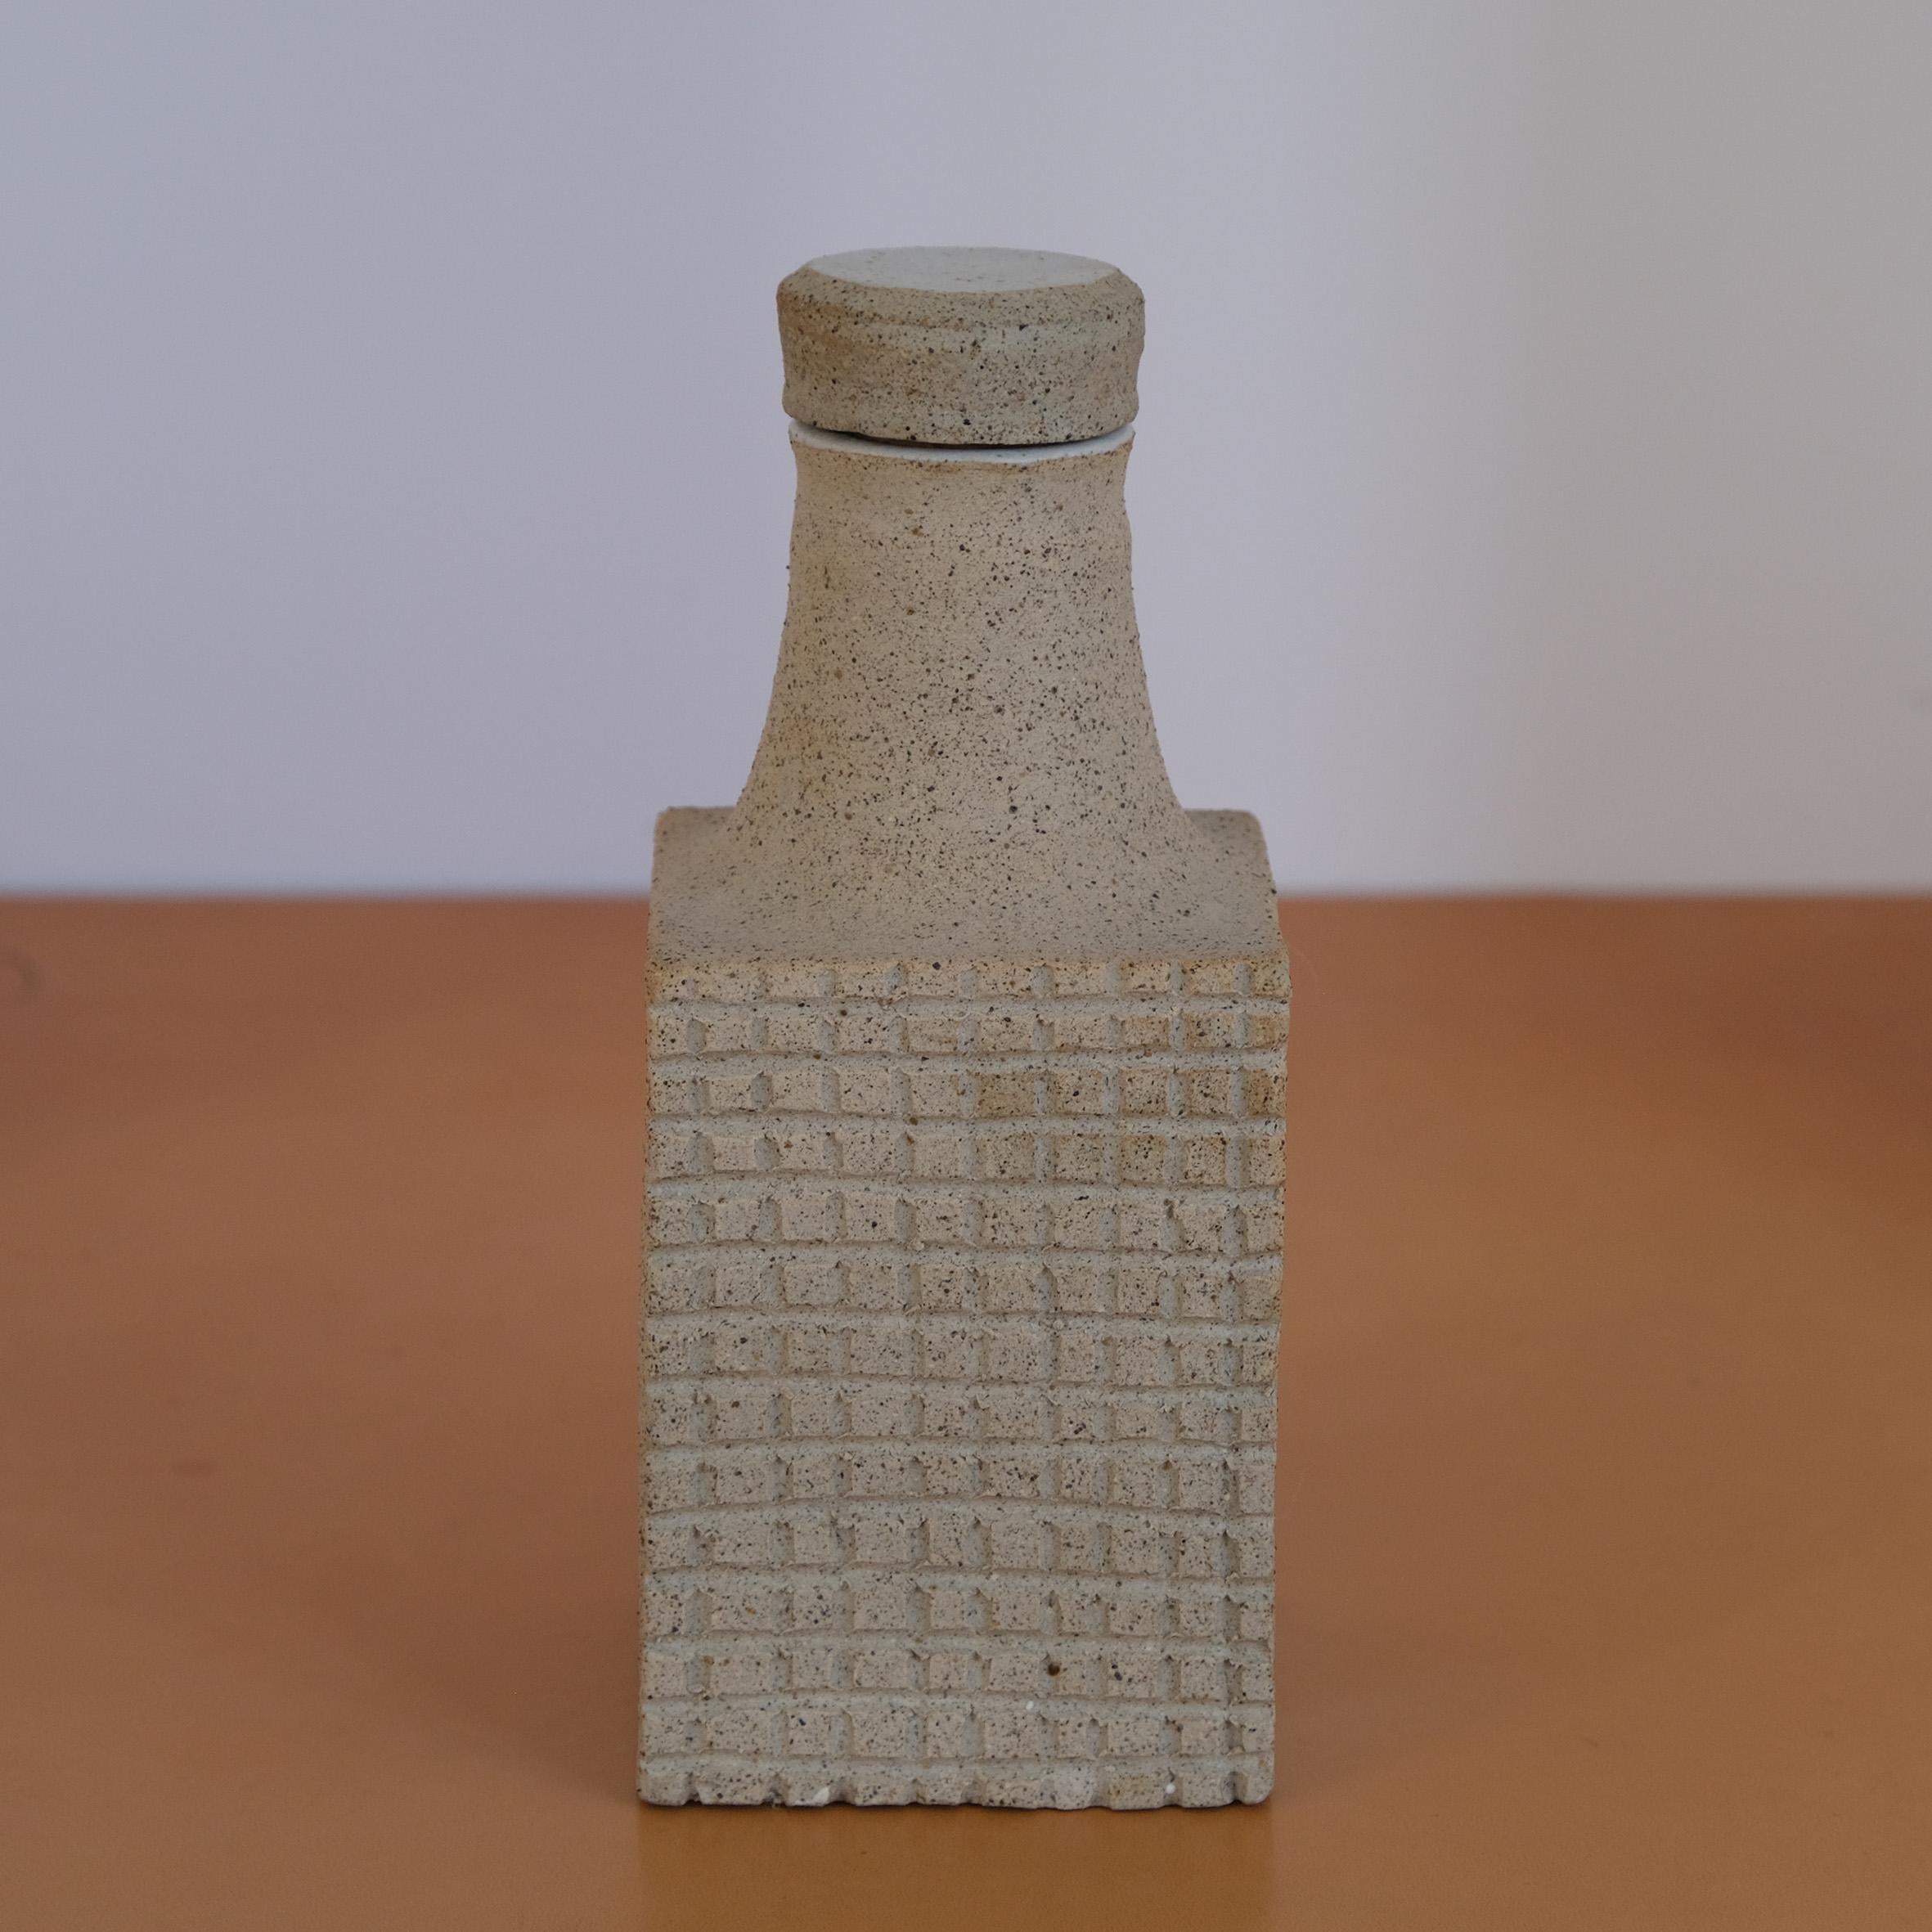 Bruno Gambone (1936-2021)

Bouteille

Bouteille en céramique gris clair, à corps rectangulaire décoré d'une grille en bas-relief sur le devant et le dos, le col de la bouteille en forme de trompette fermé par un bouchon en céramique